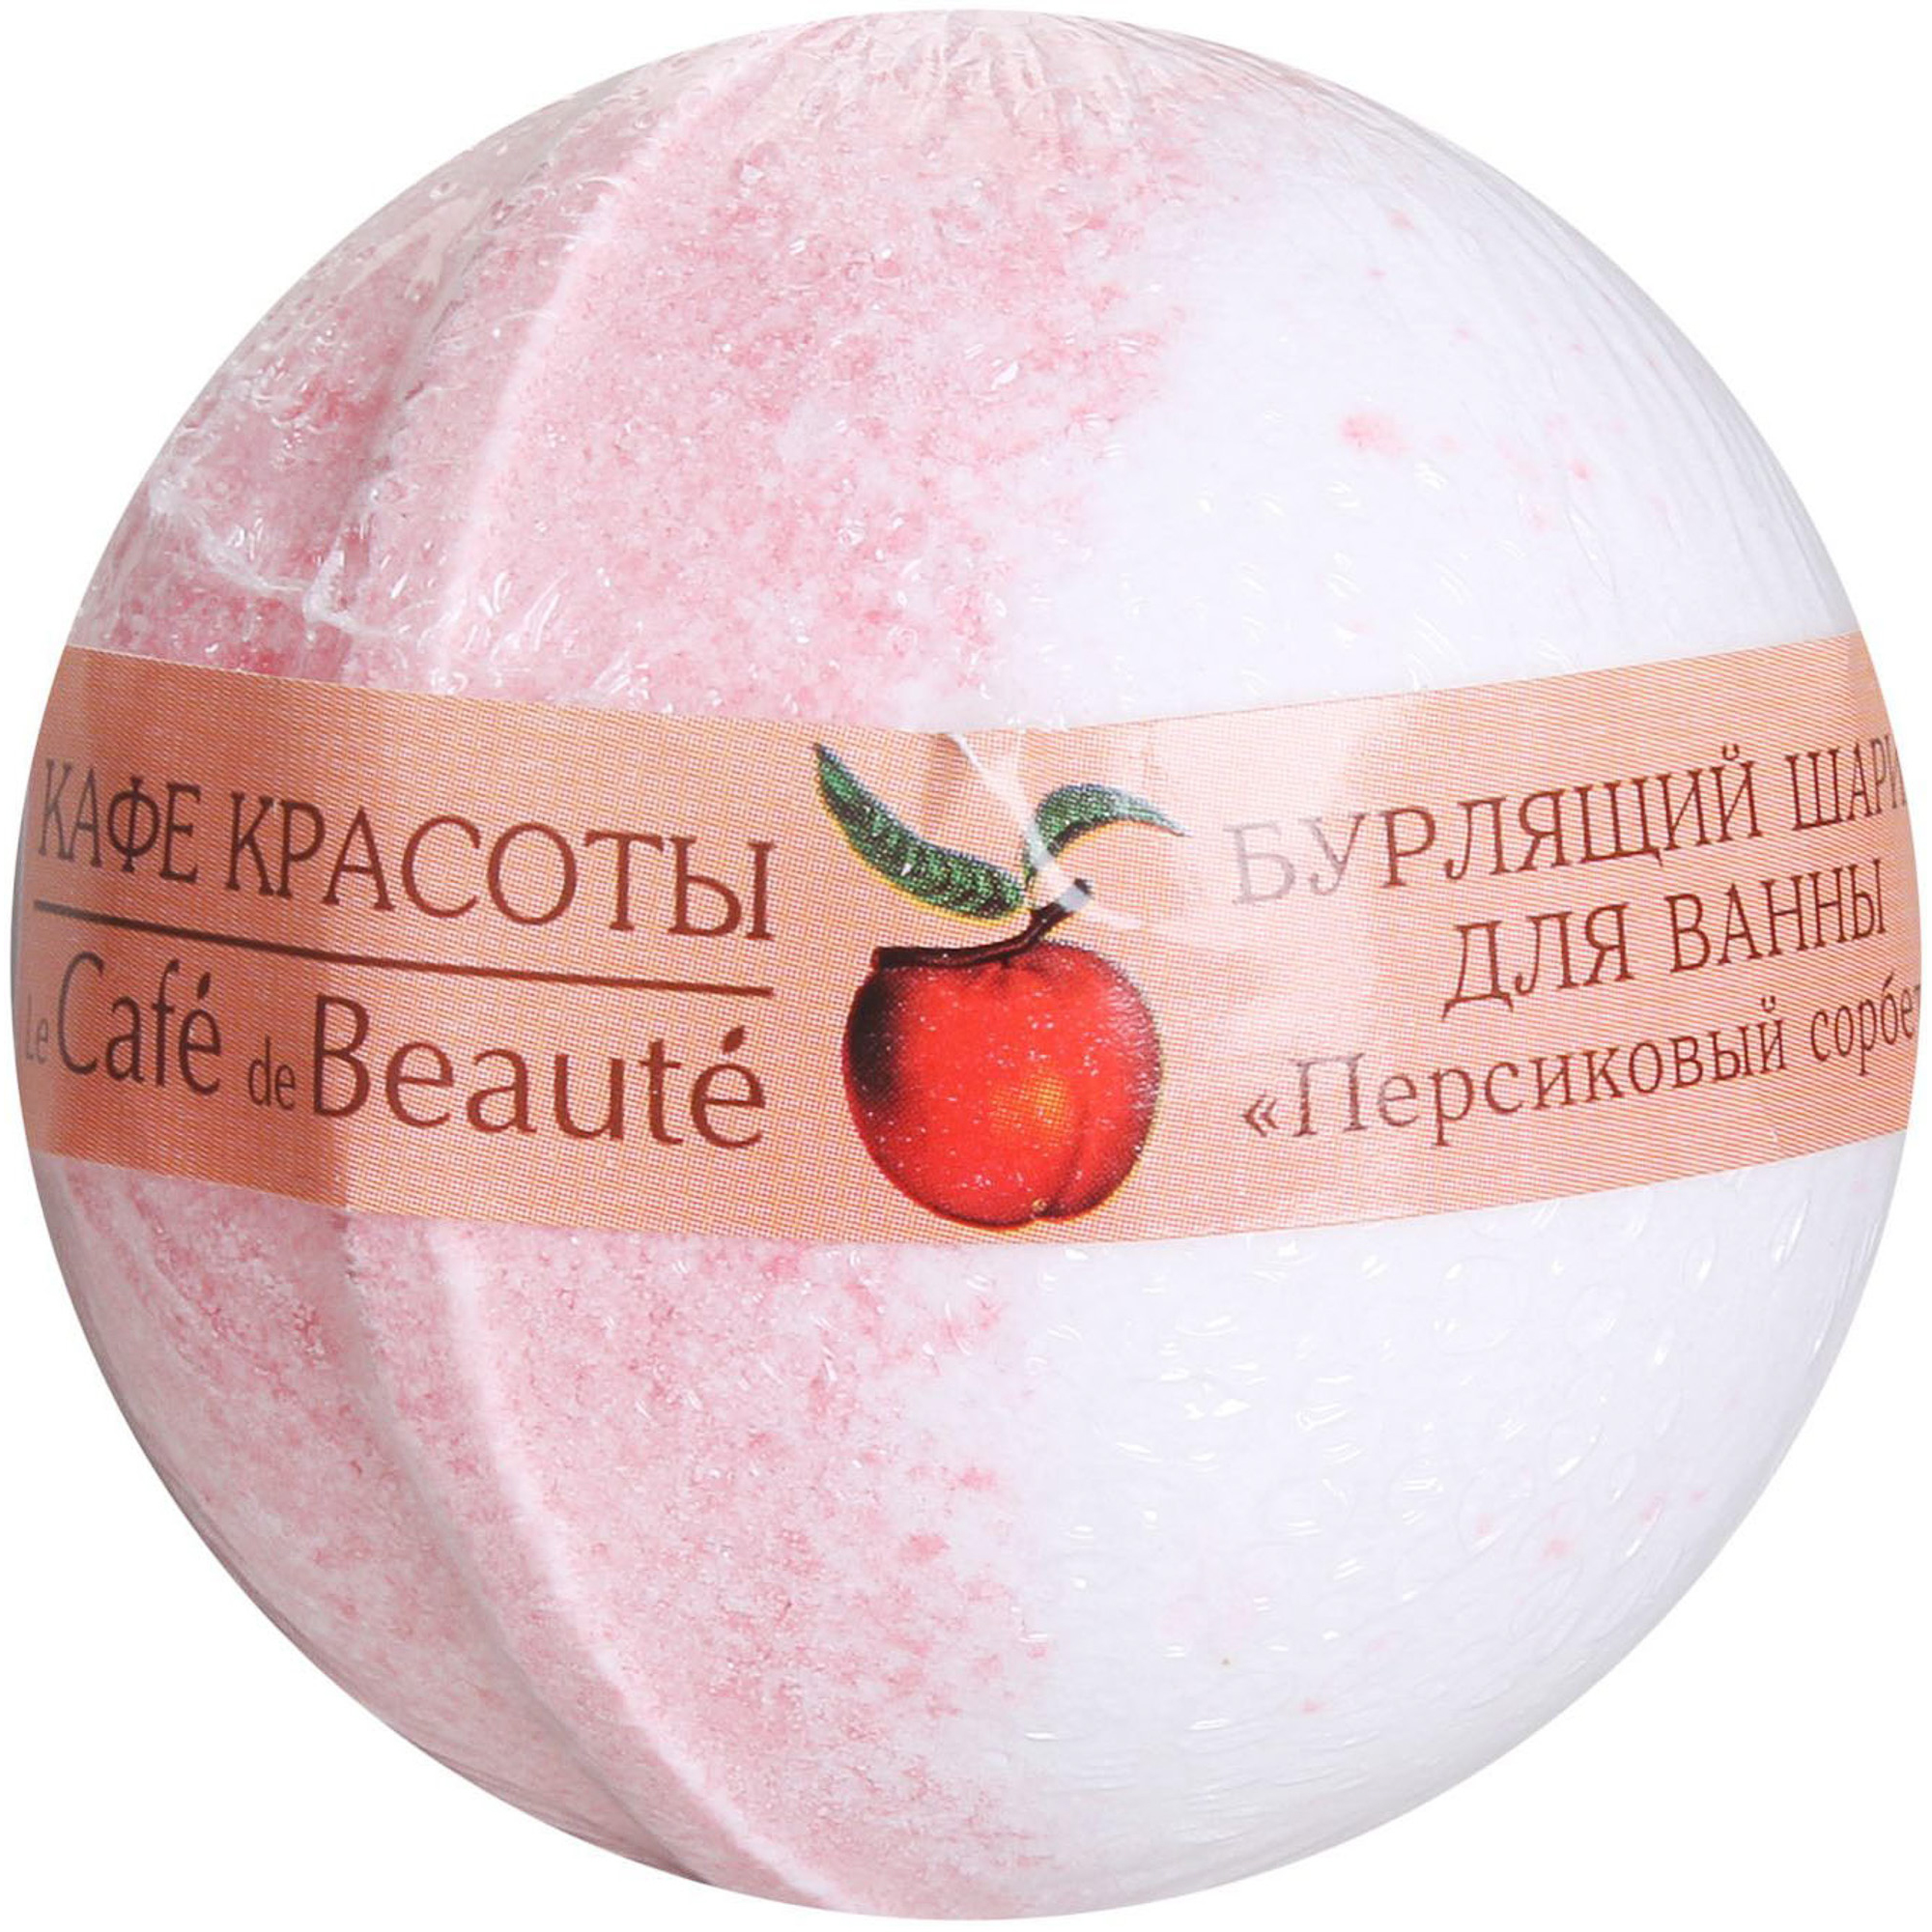 Шар для ванны Кафе Красоты Персиковый сорбет 120 г шар для ванны кафе красоты розовый сорбет 120 г